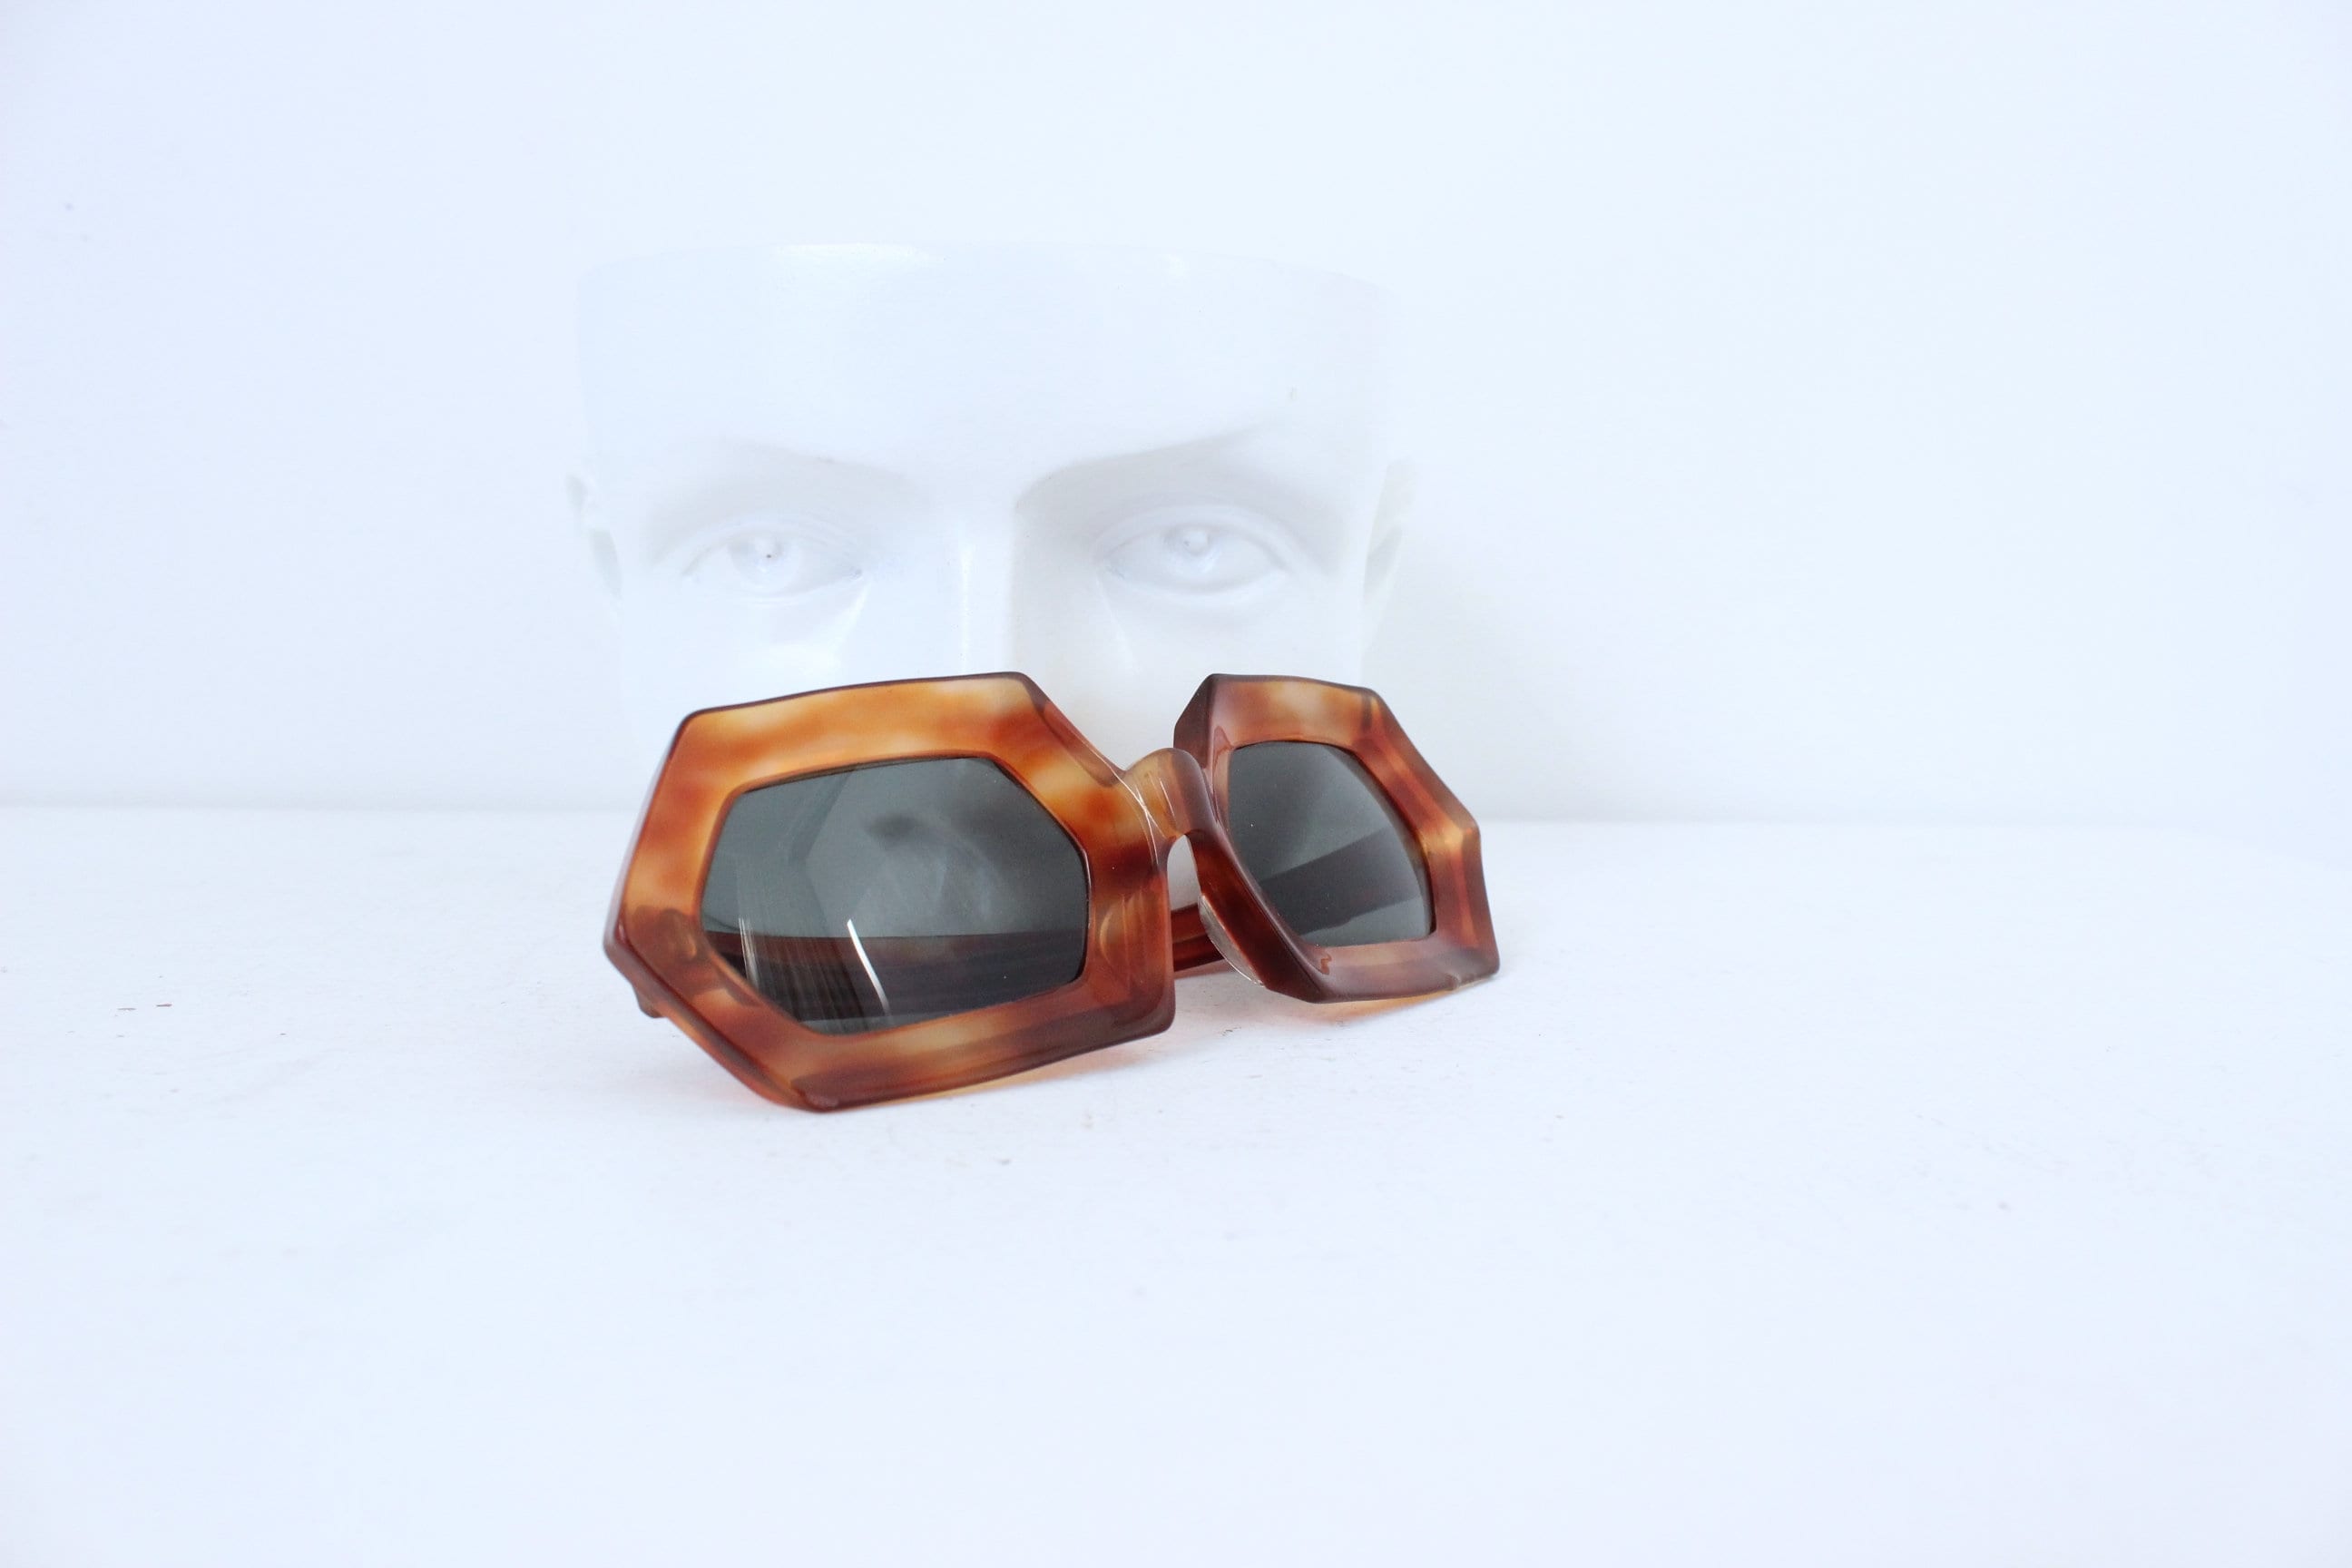 Rare 1960s Hexagonal Tortoiseshell Sunglasses ‘Riviera’ - by Michel Brevet, Handmade France